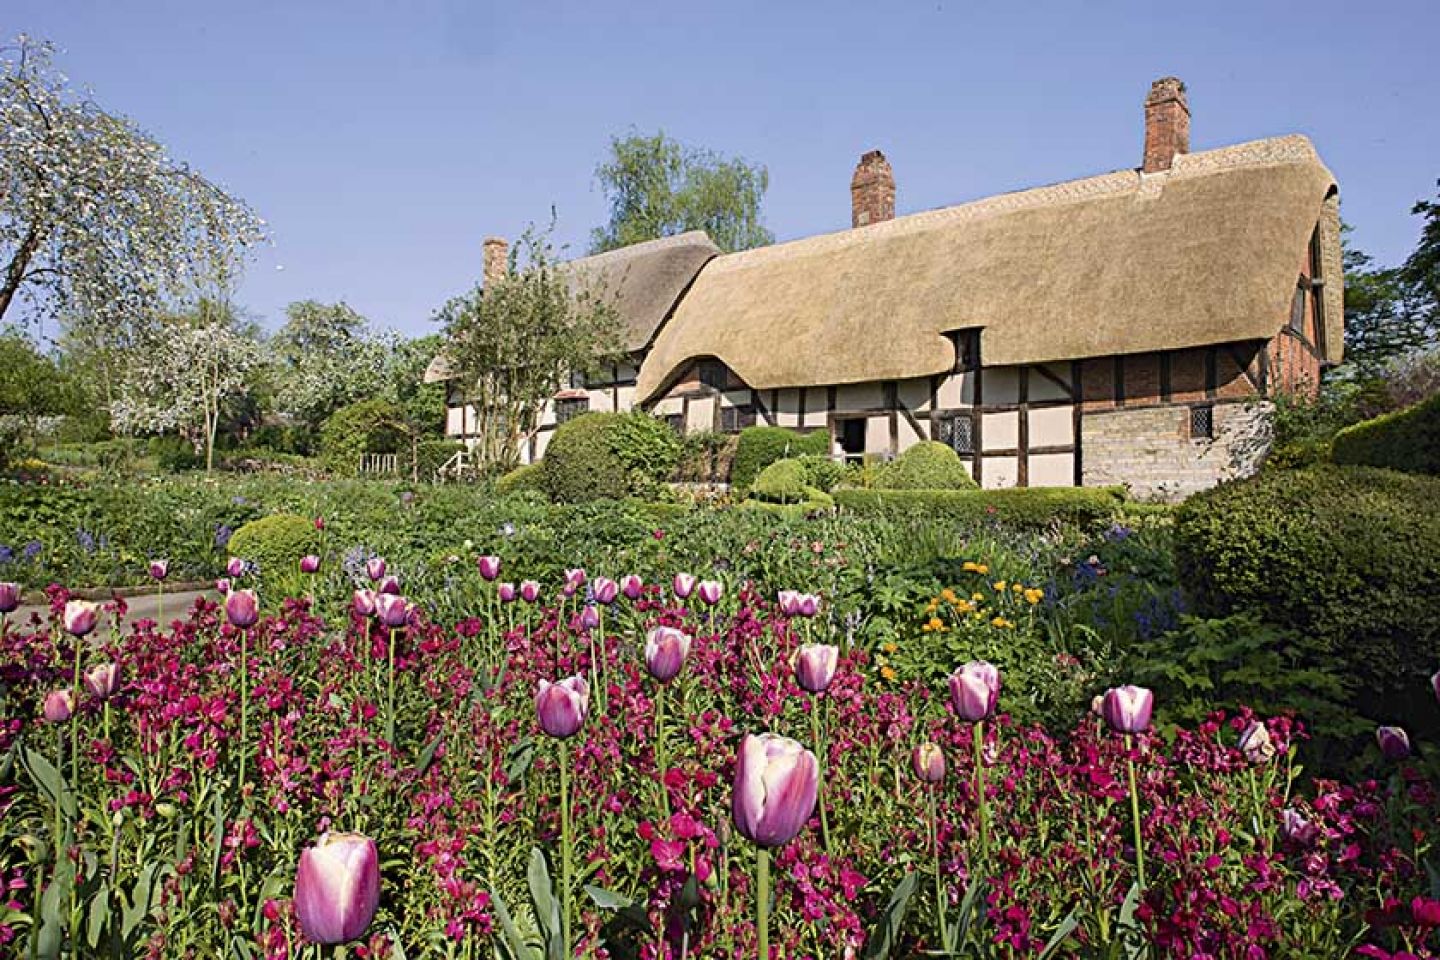 Anne  Hathaways  Cottage  Shottery  Must  Credit  Visit England  Jameskerr Co Uk